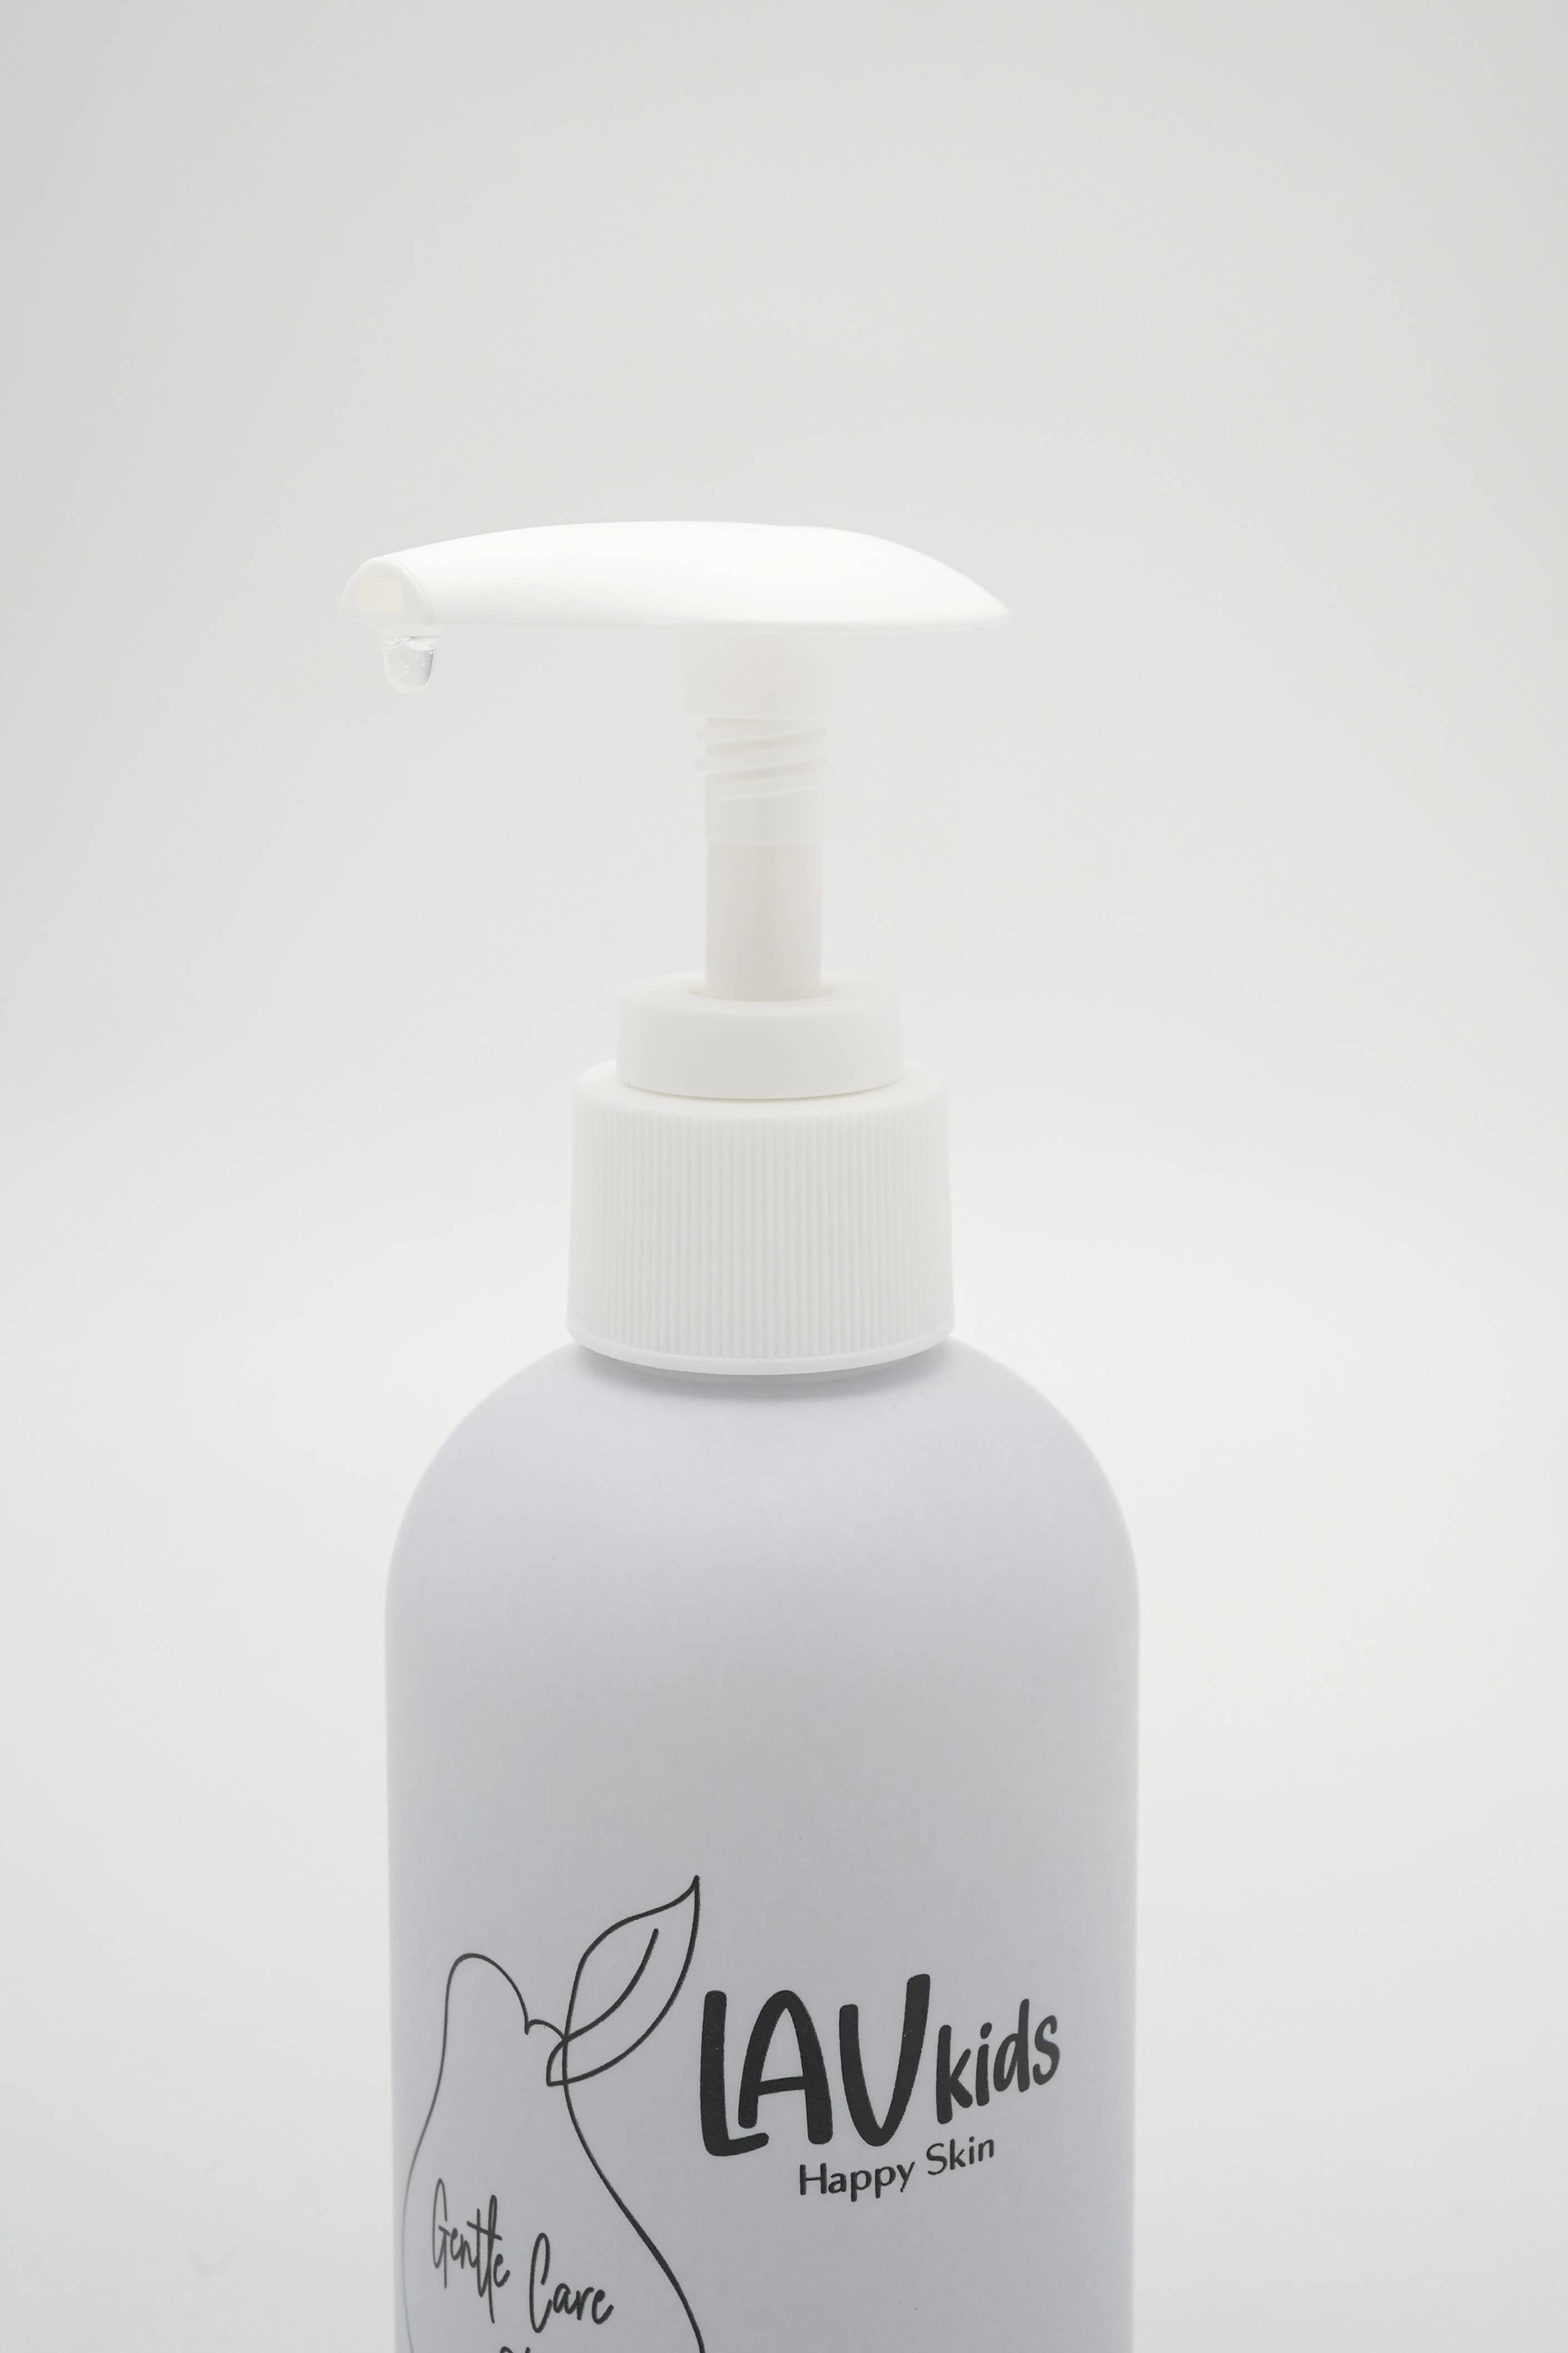 LavKids Skincare by Miss Nella Gentle Care Shampoo 200ml